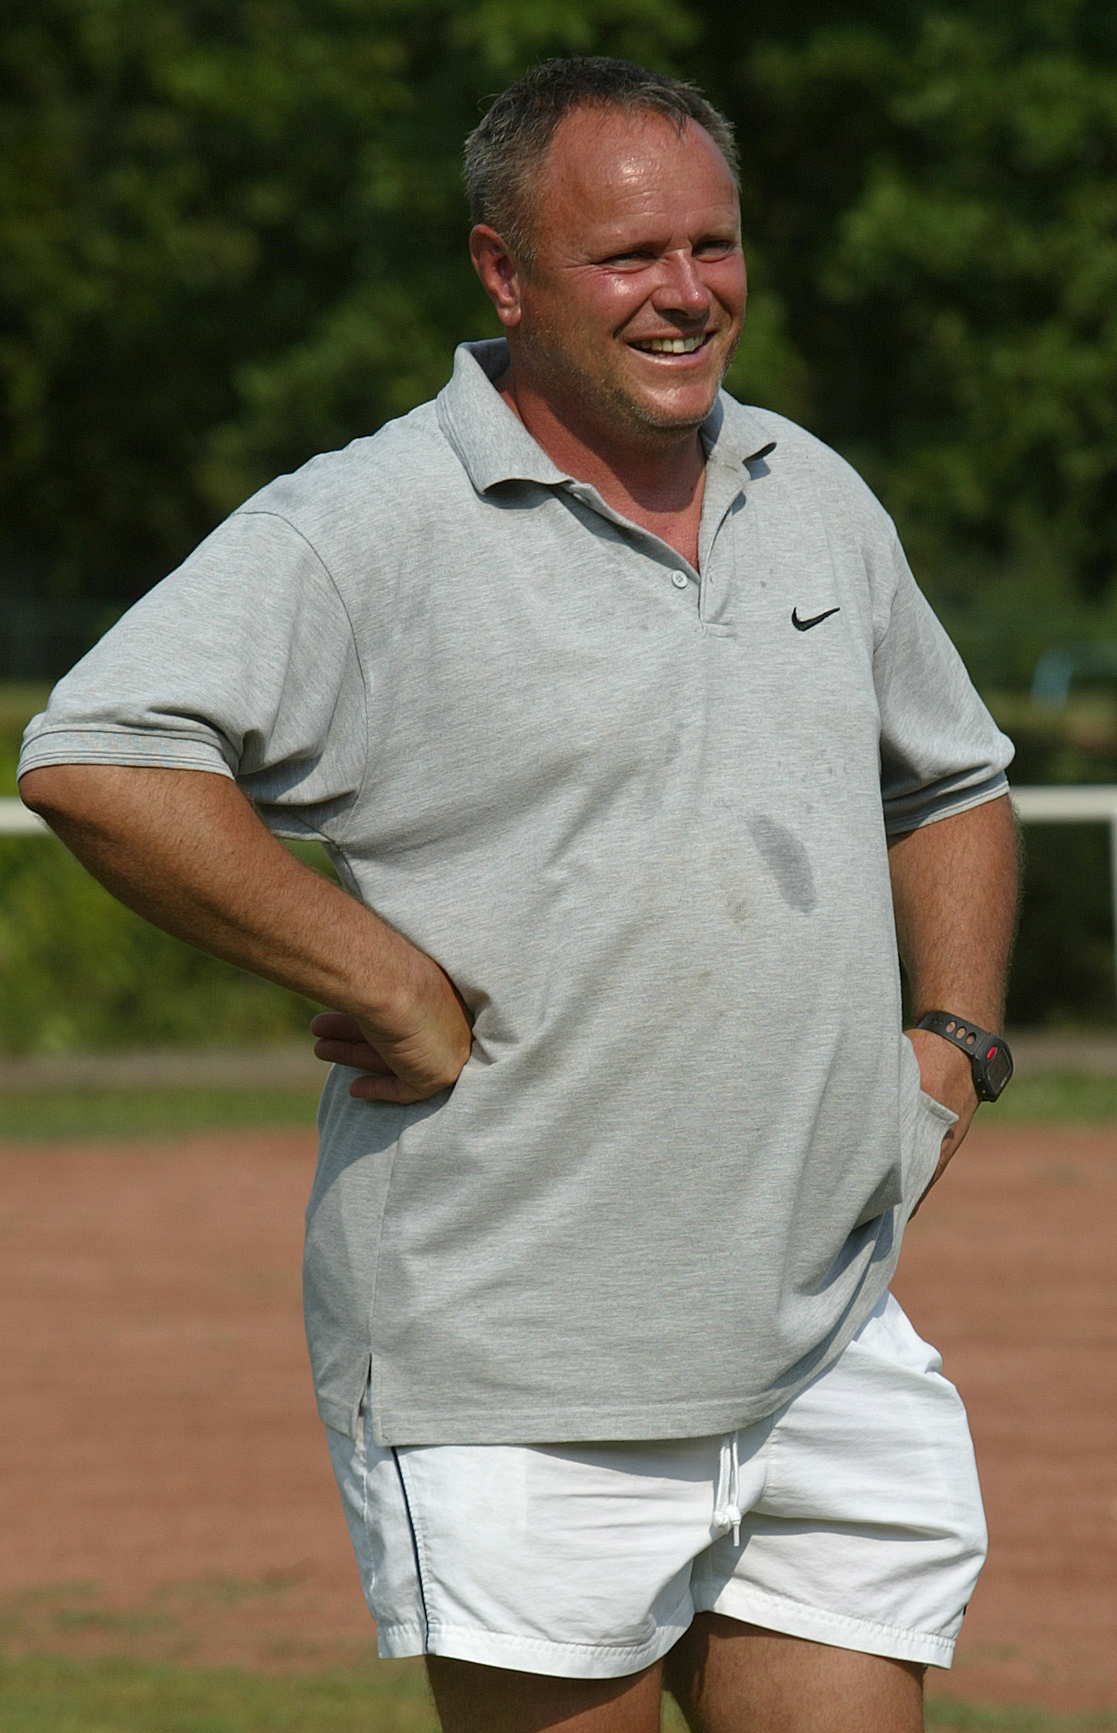 A Dunába szórják majd az elhunyt Fradi edző hamvait - Blikk